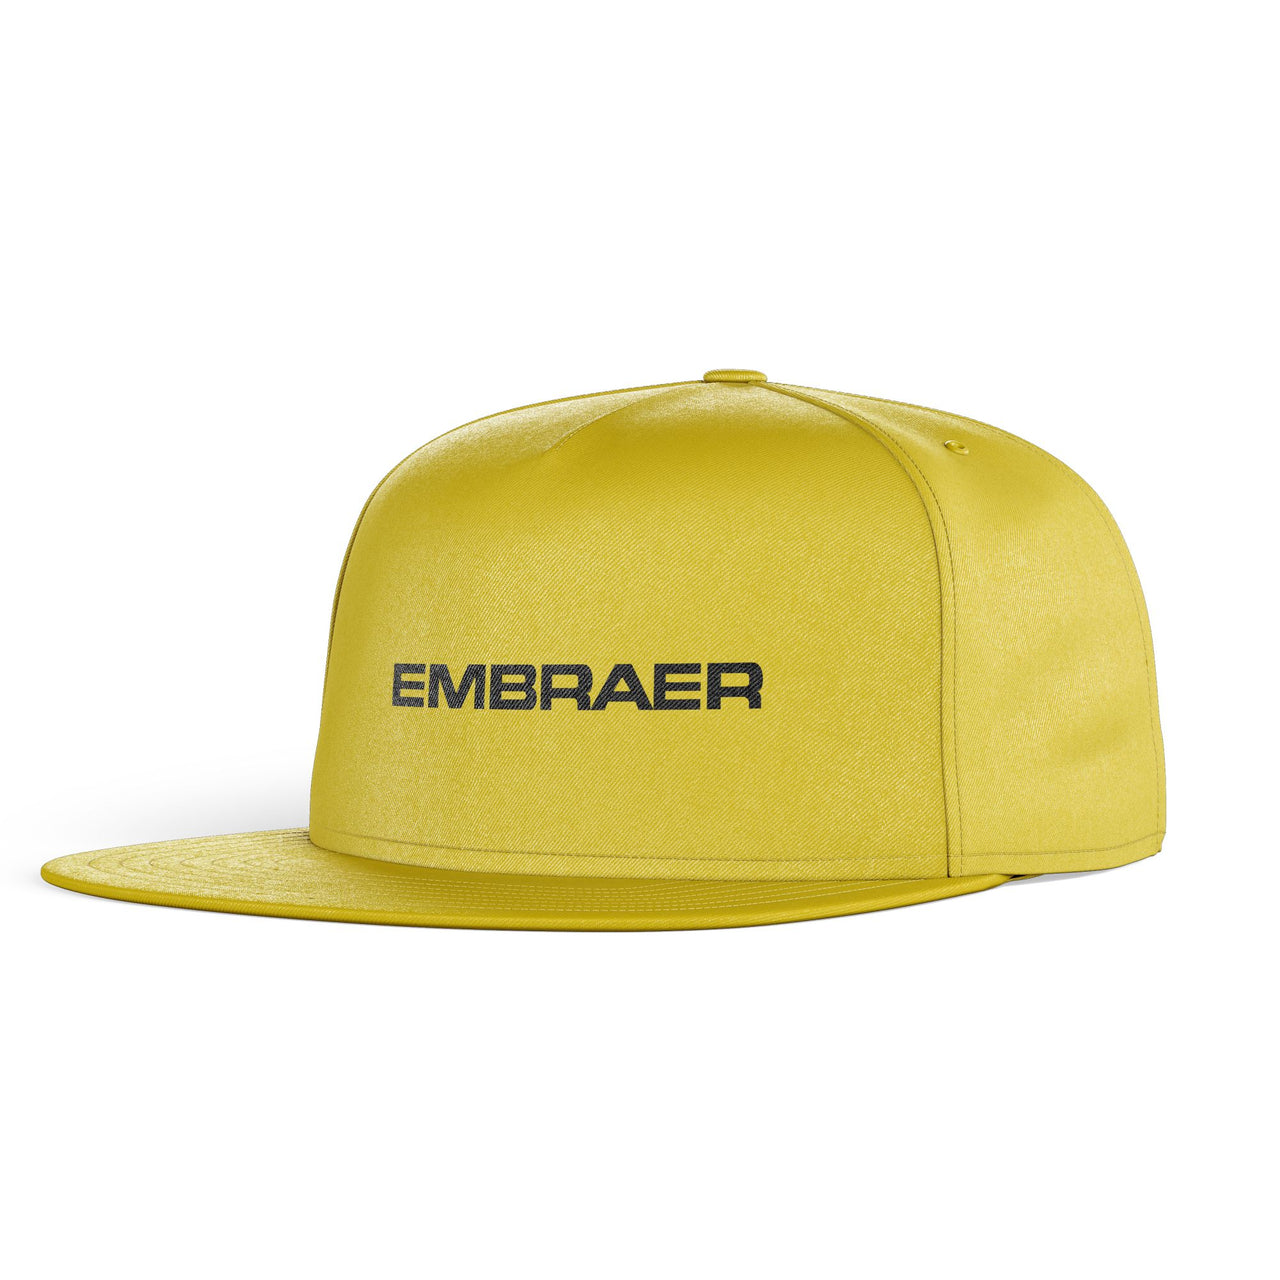 Embraer & Text Designed Snapback Caps & Hats